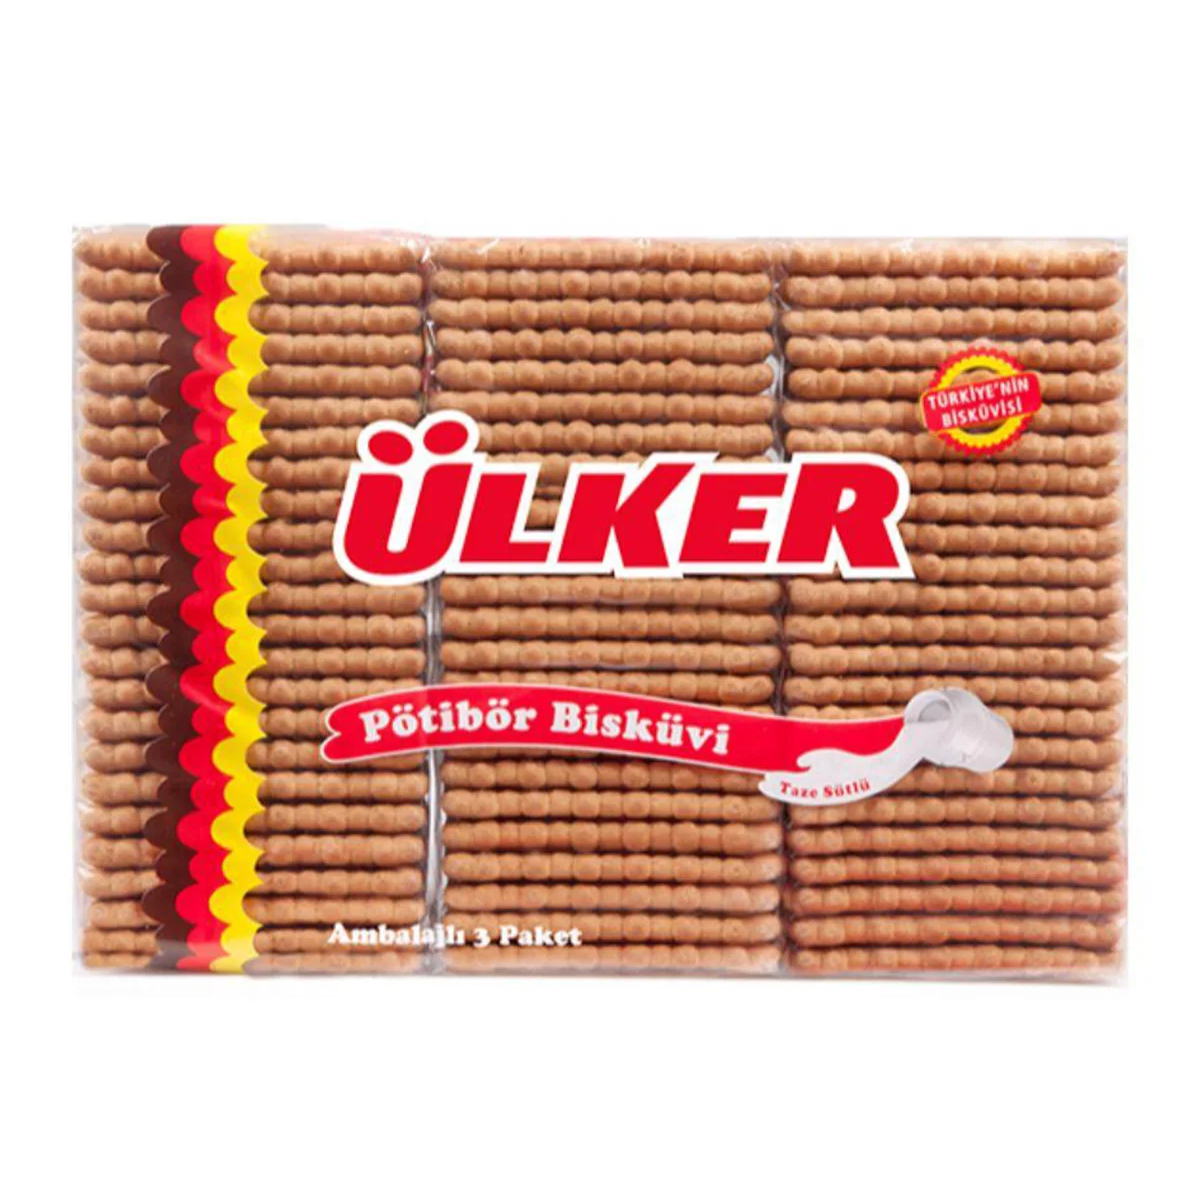 Печенье Ulker Petit Beurre, 450 г печенье ulker цельнозерновое в молочном шоколаде 98 г